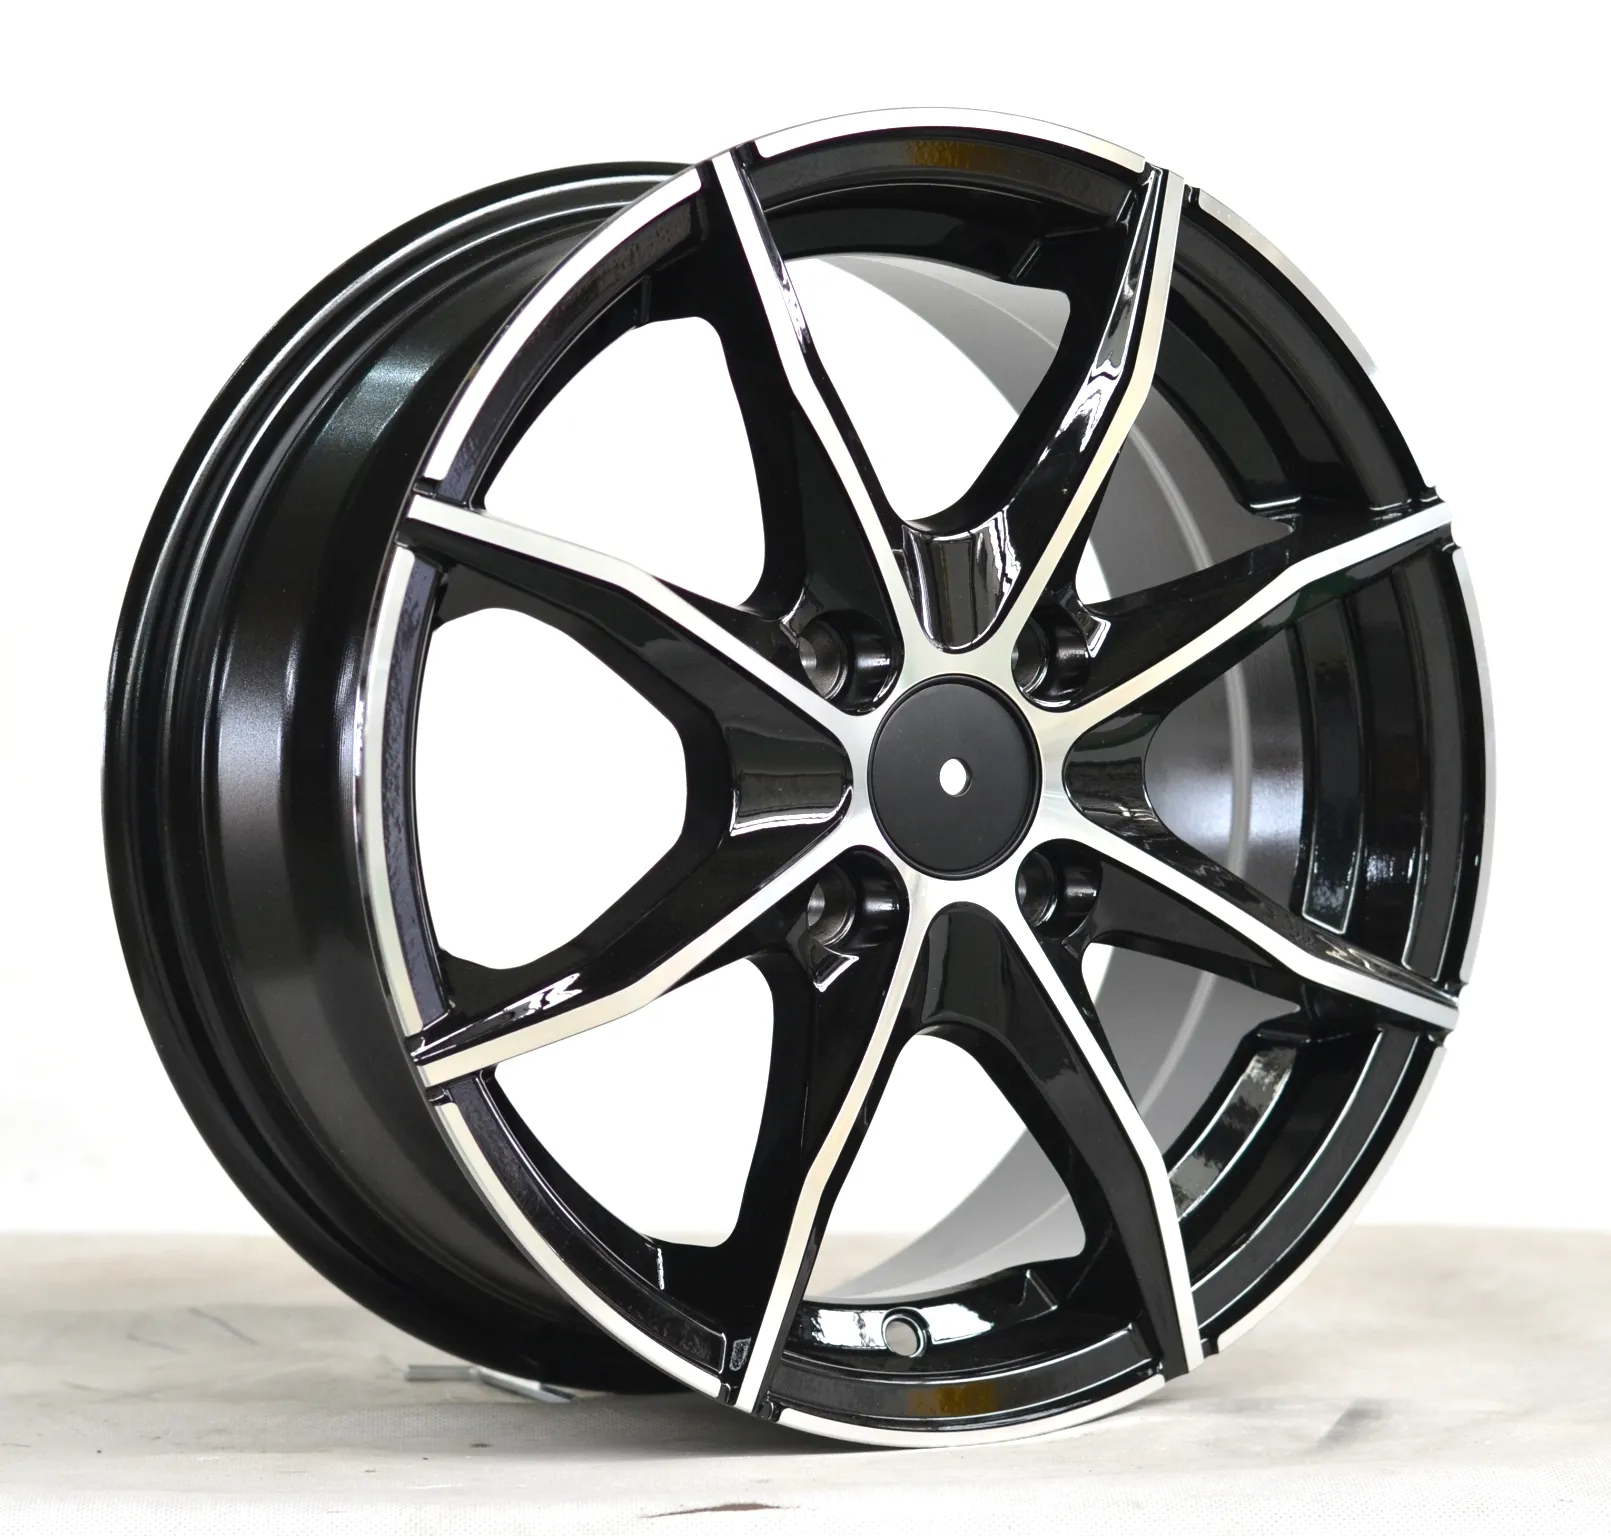 Aftermarket wheels five split spokes 4x98 spoke wheel rines 14 de lujo fit for 4x100 14 inch passenger car tires